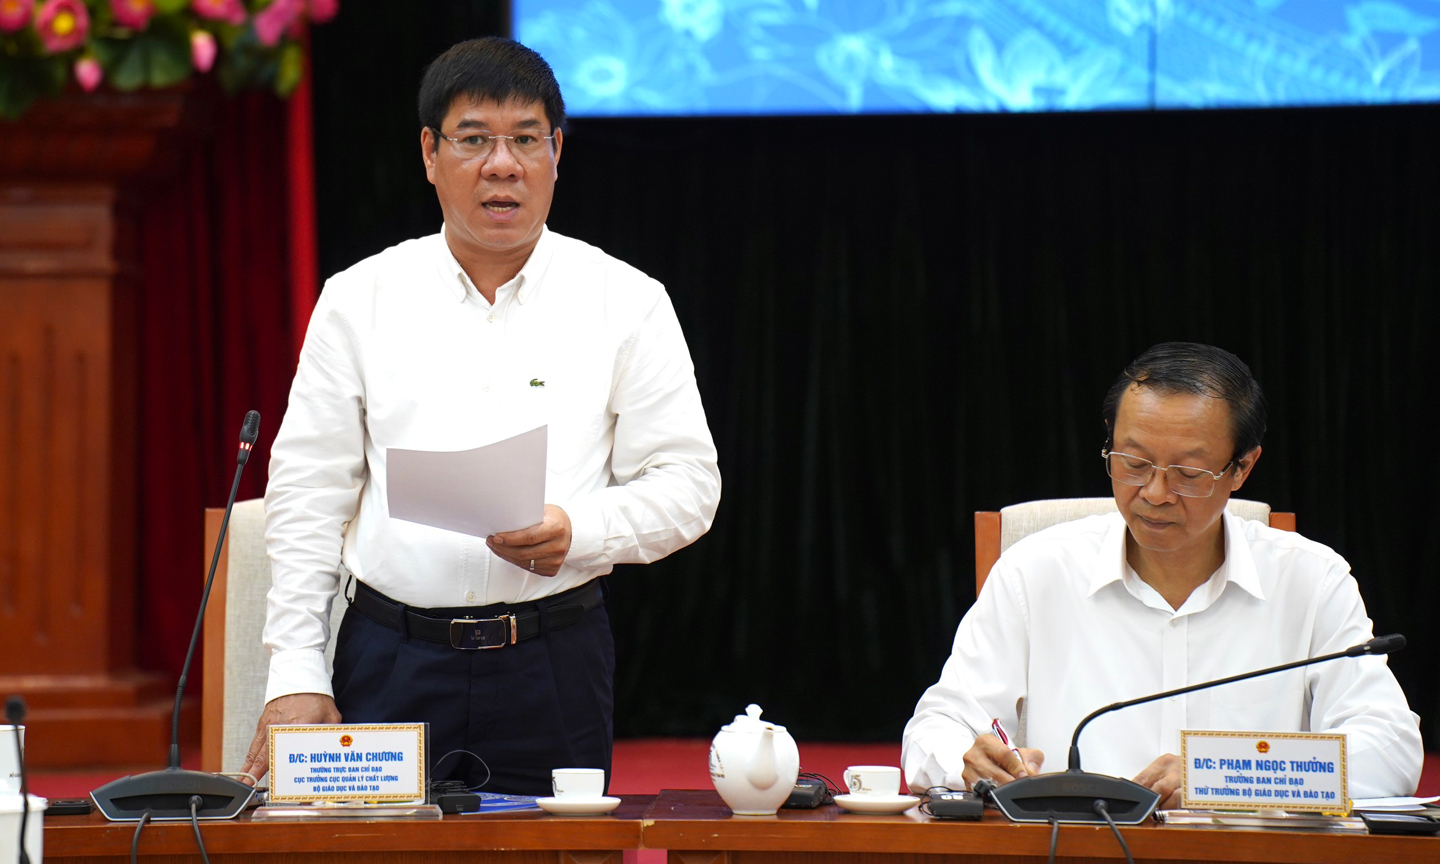 GS.TS Huỳnh Văn Chương - Cục trưởng Cục Quản lý chất lượng (Bộ GD&ĐT) báo cáo tại buổi họp báo.